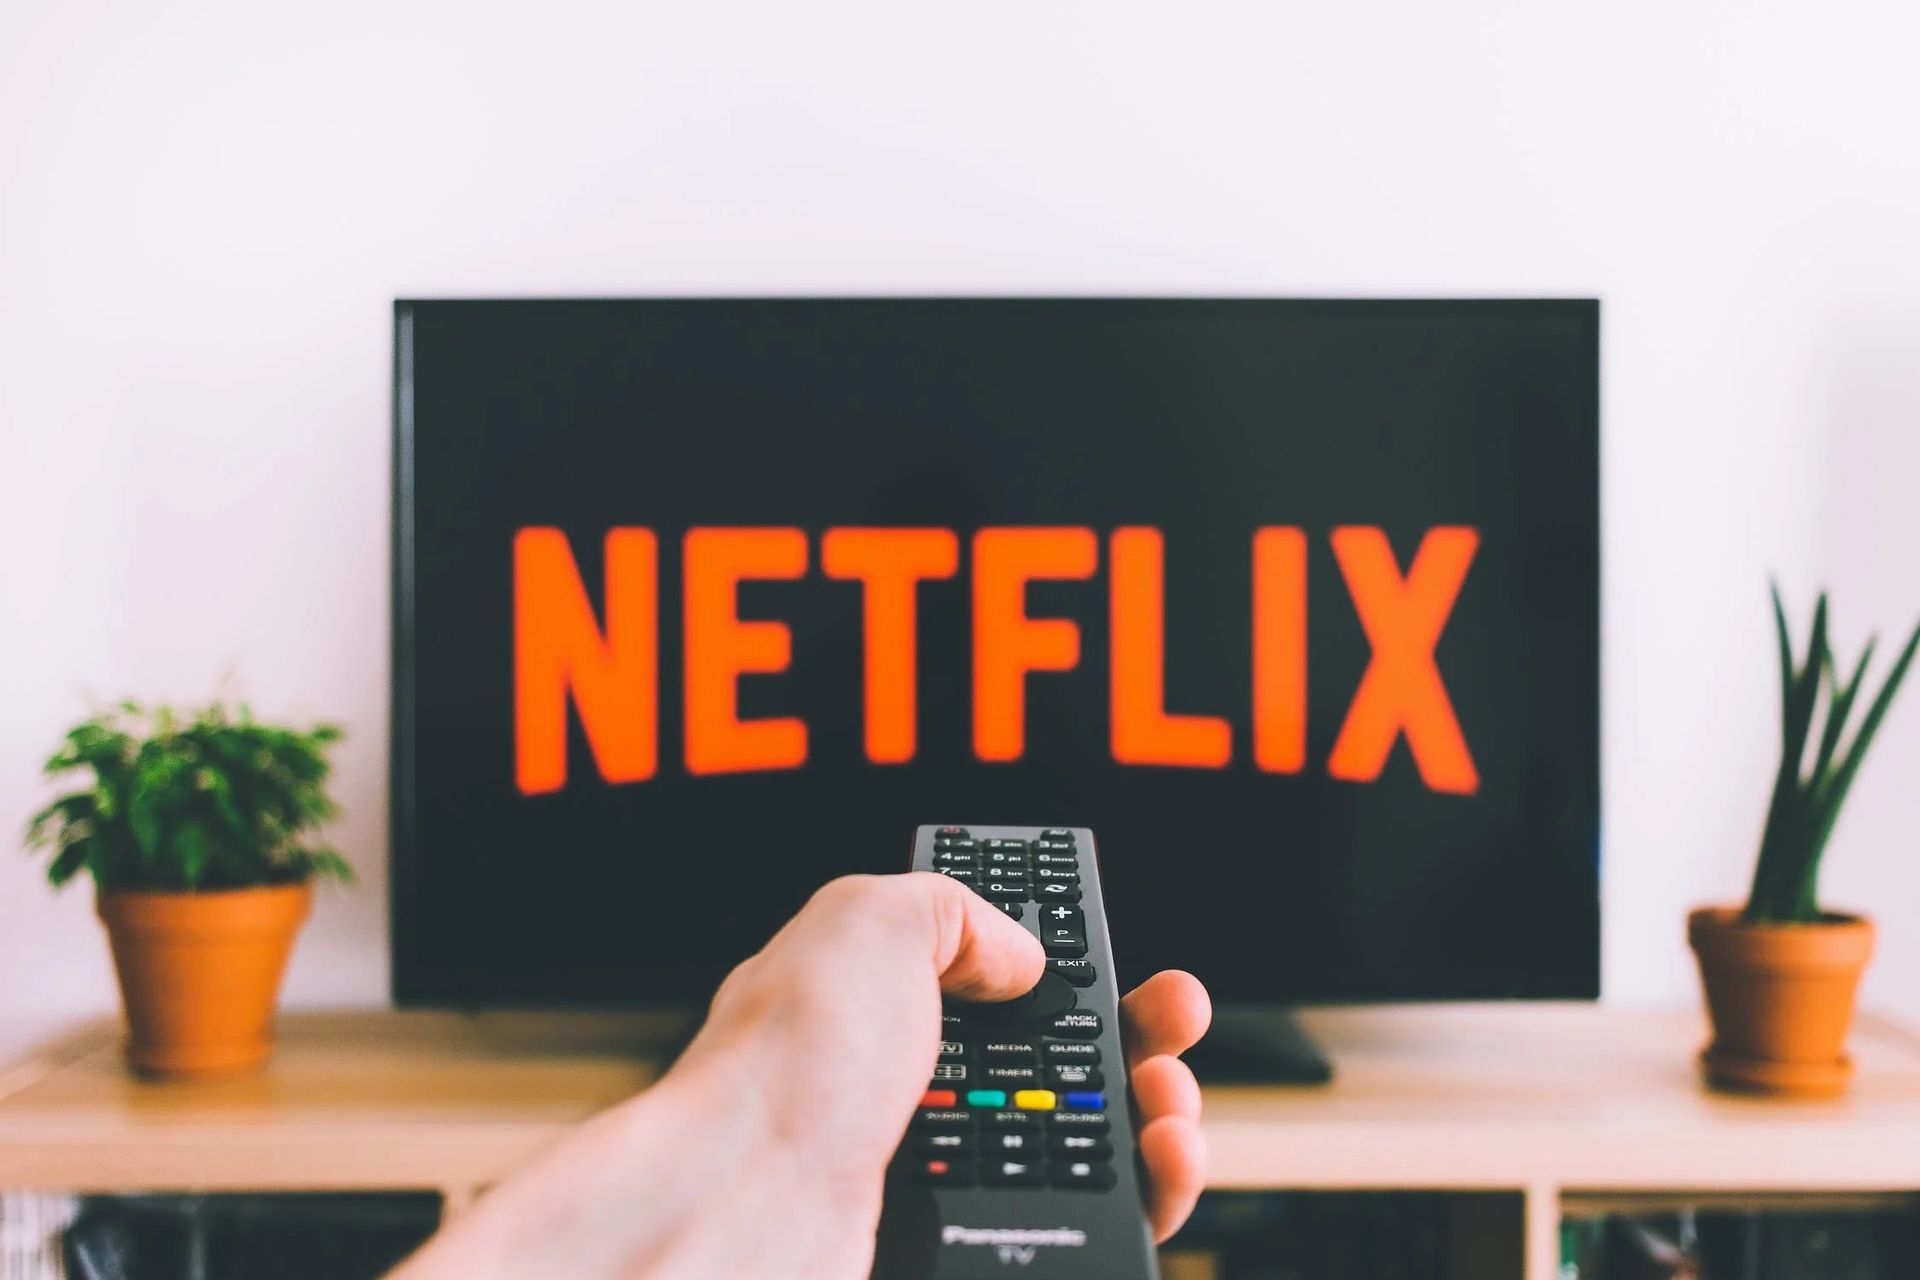 La plate-forme de streaming populaire Netflix ajoutera bientôt des flux en direct à son service.  Netflix pourrait bientôt être une plate-forme clé pour les artistes debout et autres émissions en direct